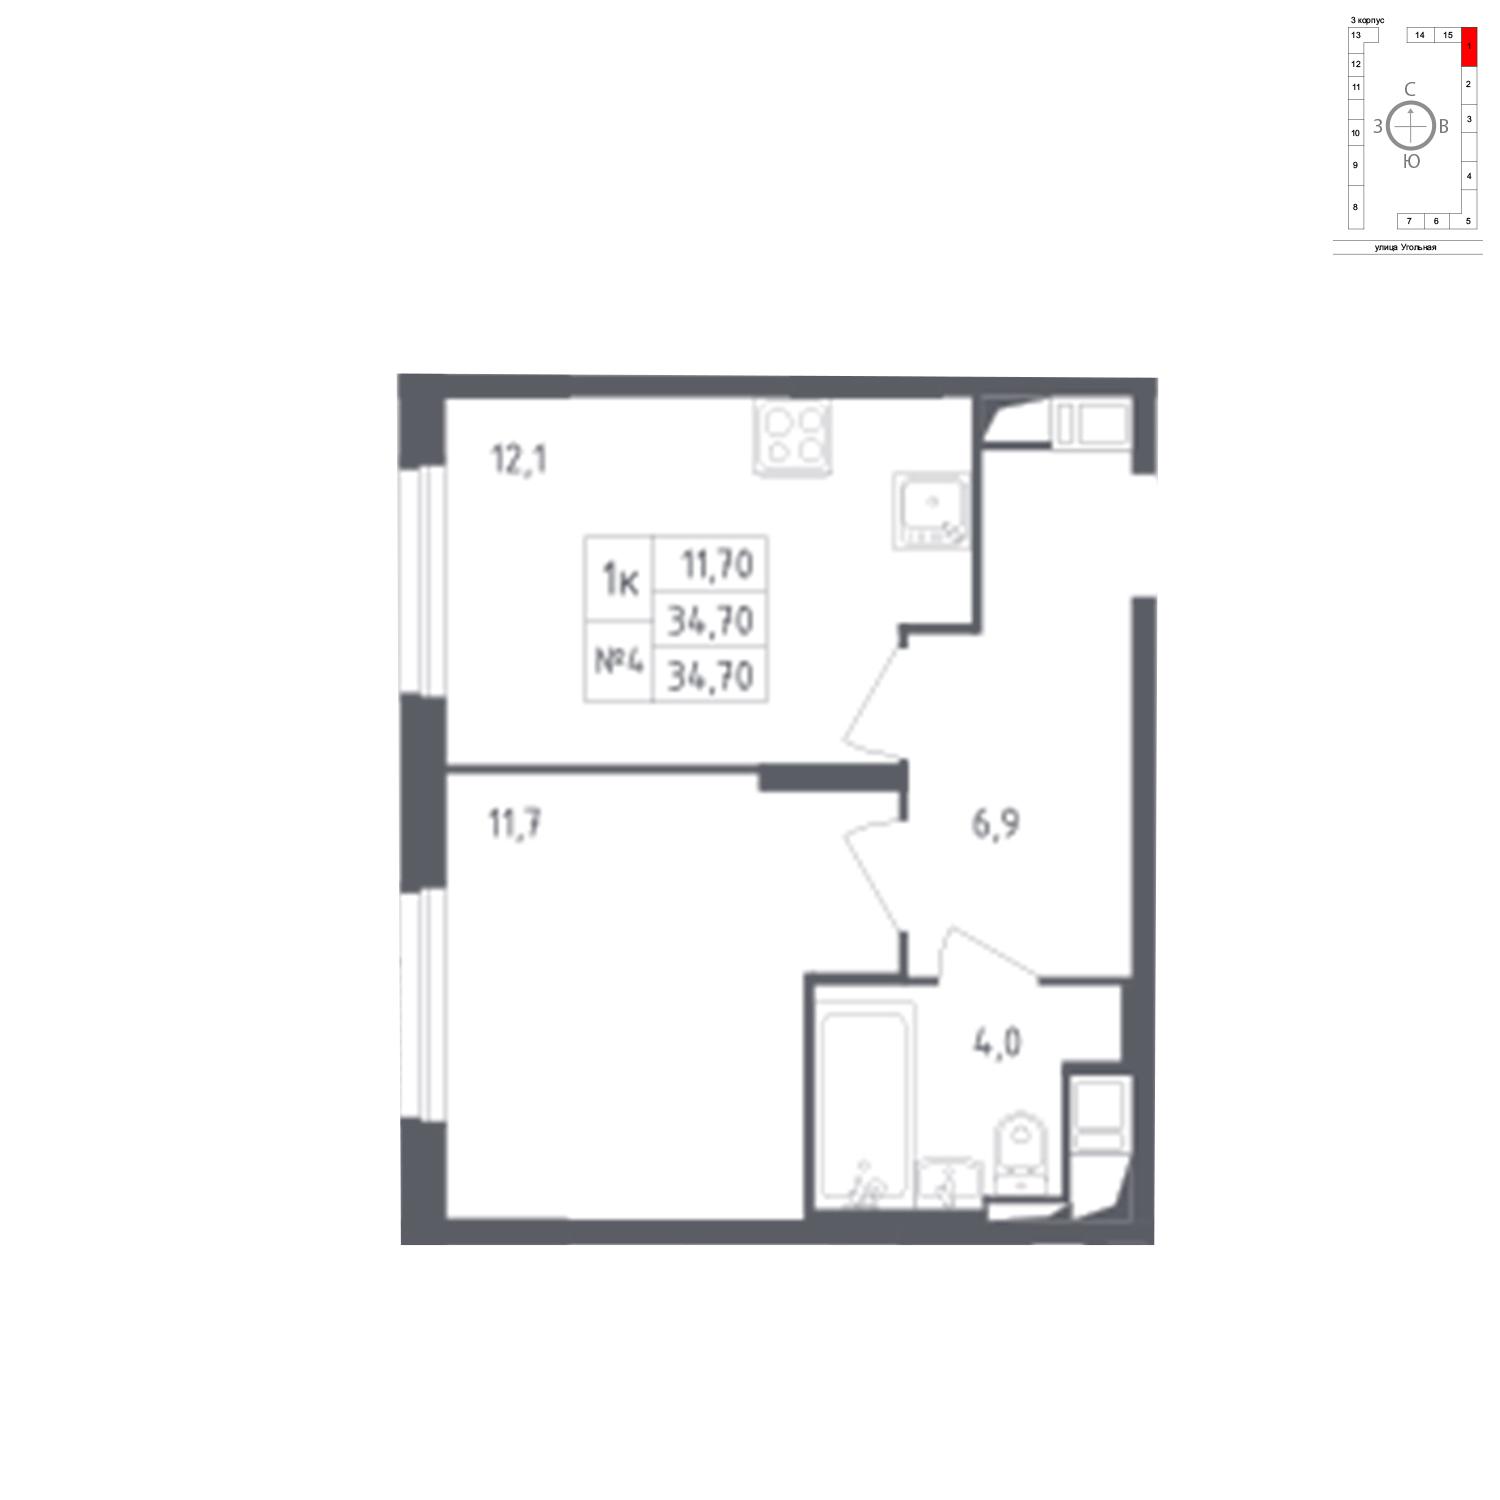 Продаётся 1-комнатная квартира в новостройке 34.7 кв.м. этаж 9/17 за 6 610 919 руб 